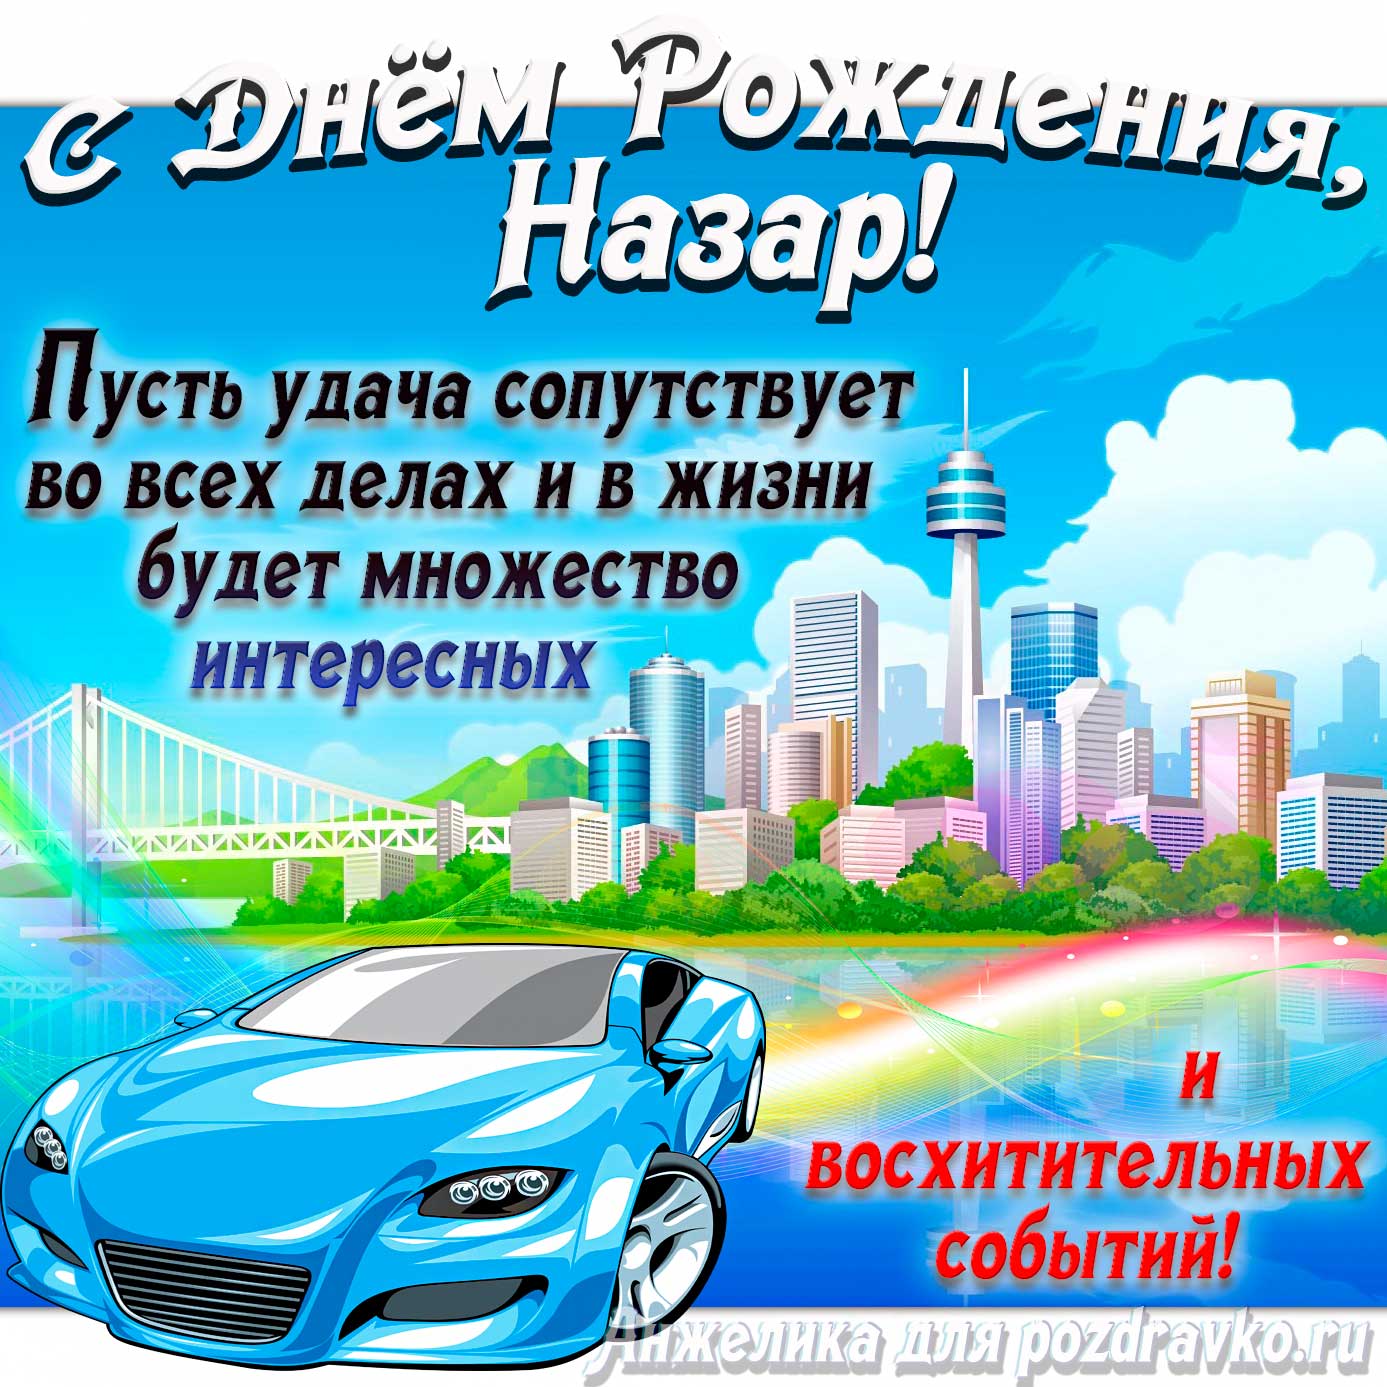 Открытка - с Днём Рождения Назар с голубой машиной и пожеланием. Скачать бесплатно или отправить картинку.